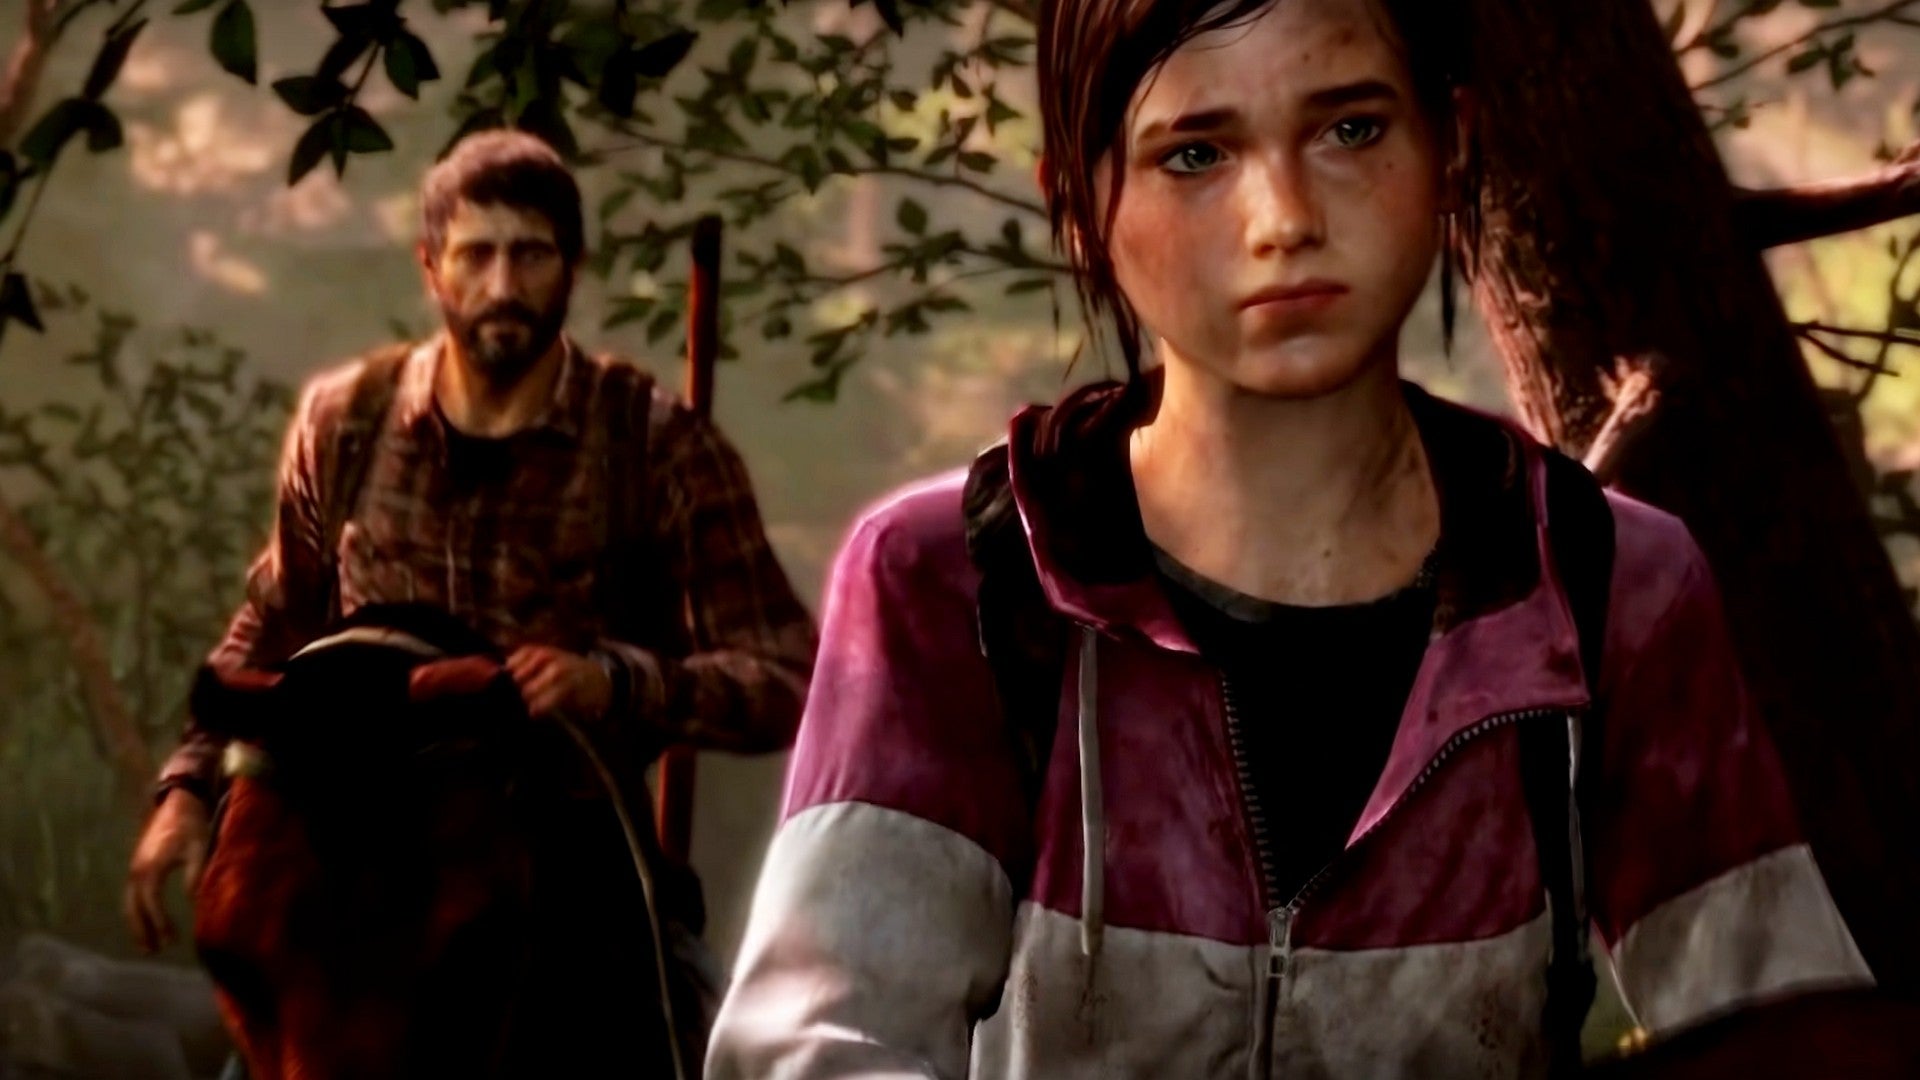 Bilder zu The Last of Us Remake: LinkedIn-Profil eines Mitarbeiters könnte auf das Projekt verweisen